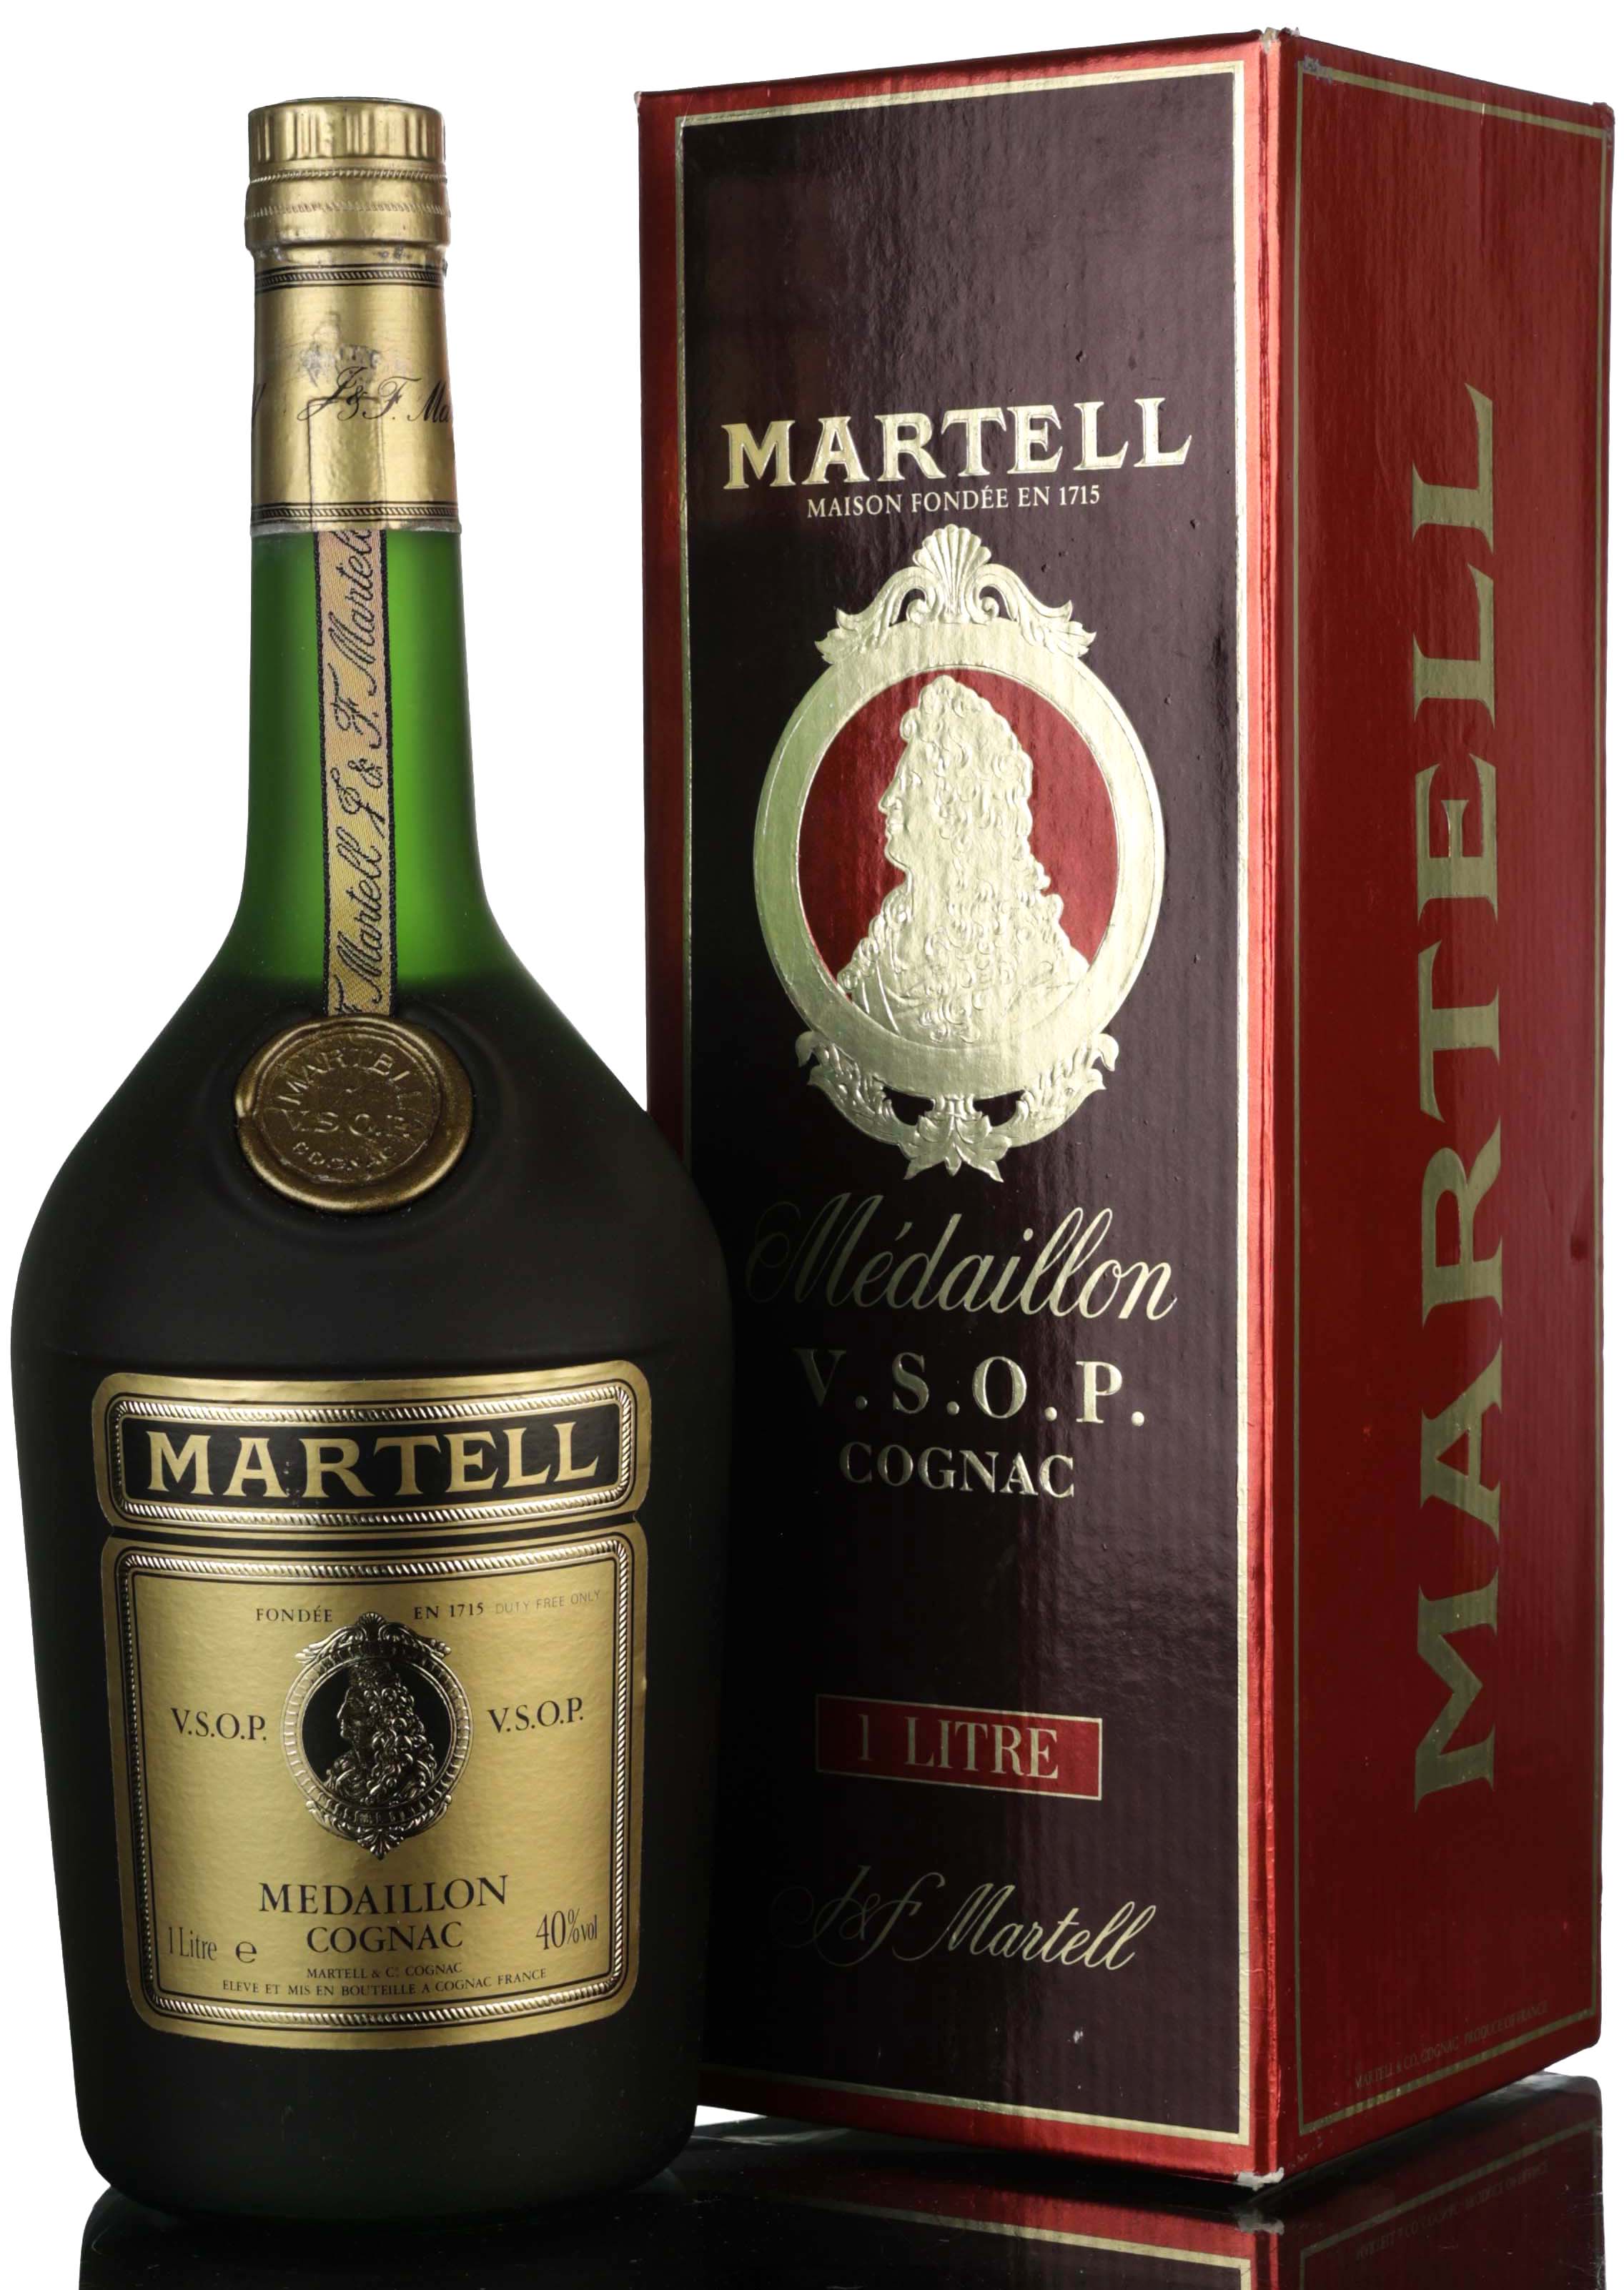 Martell VSOP Medaillon Cognac - 1980s - 1 Litre